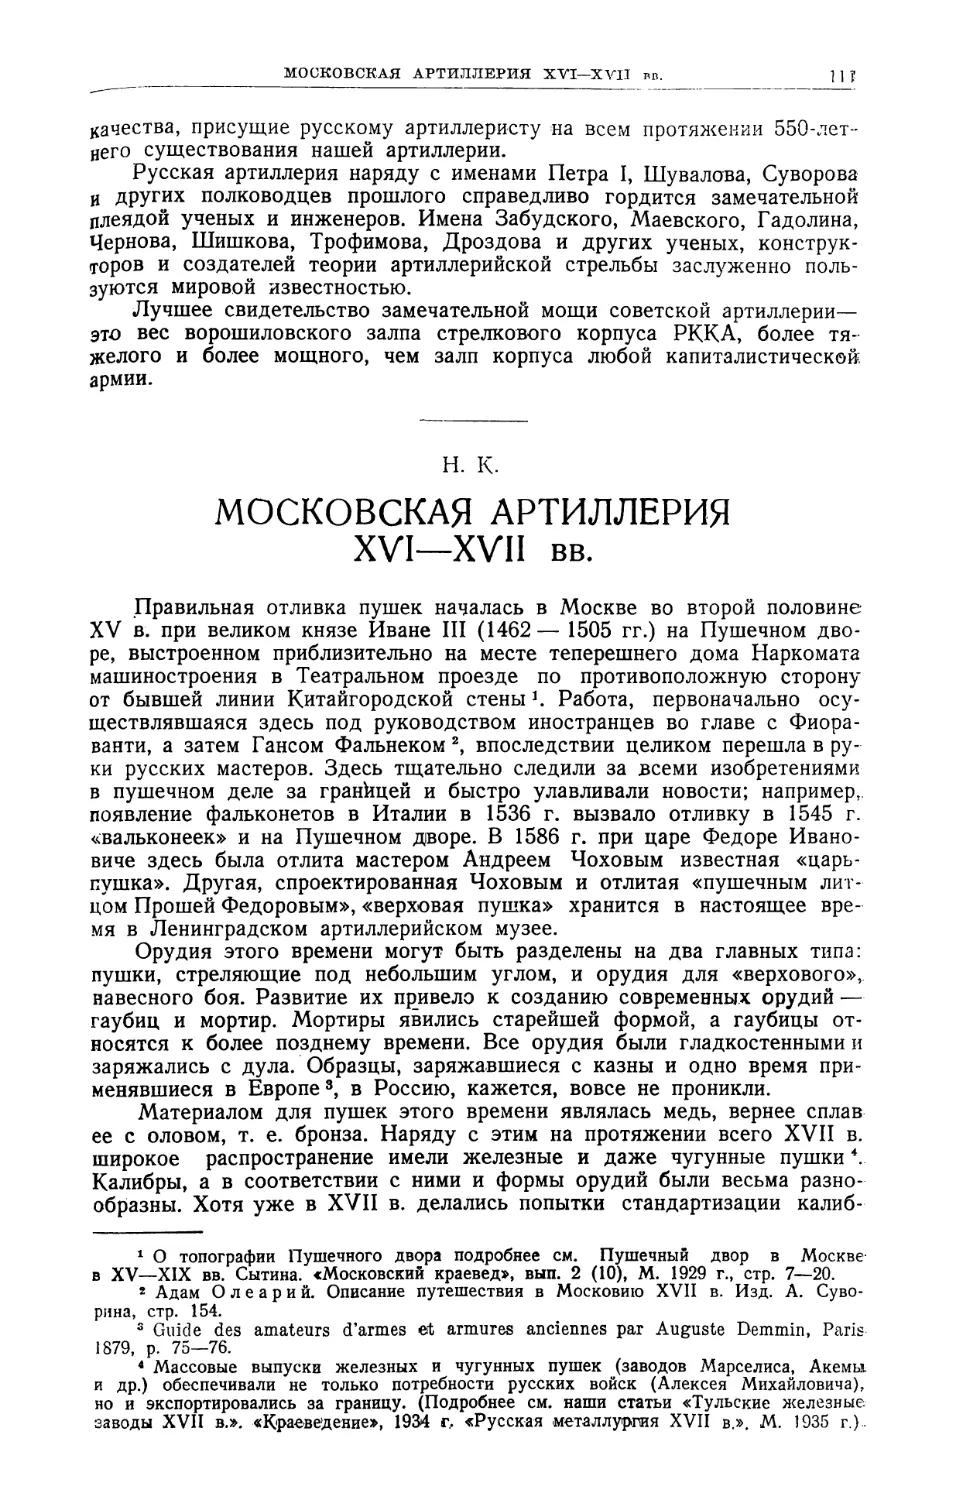 Н. К. — Московская артиллерия XVI—XVII вв